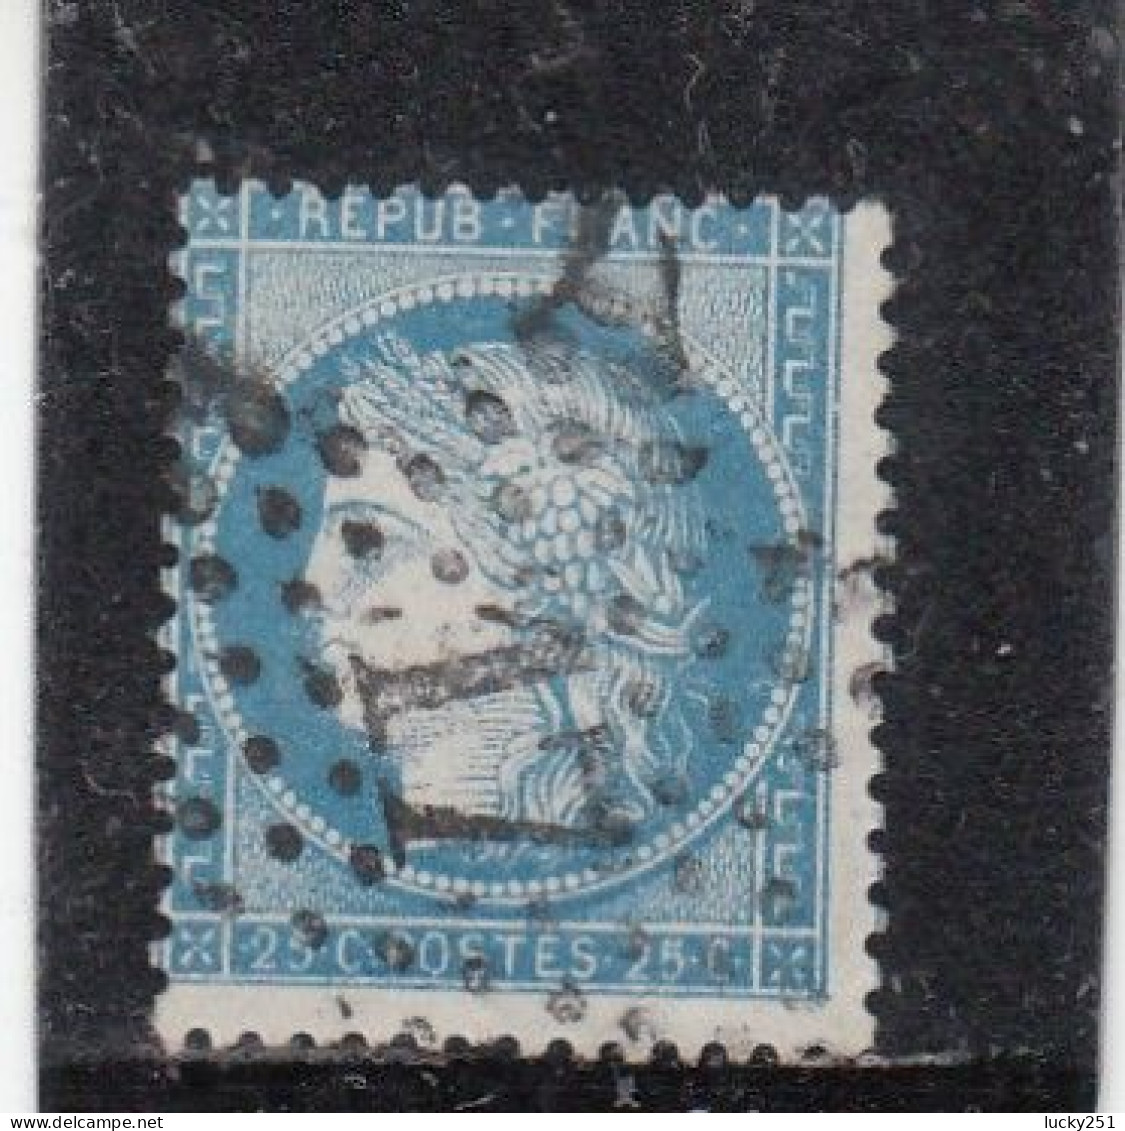 France - Année 1871/75 - N°YT 60A - Type Cérès - Oblitération Etoile Chiffrée - 25c Bleu - 1871-1875 Ceres